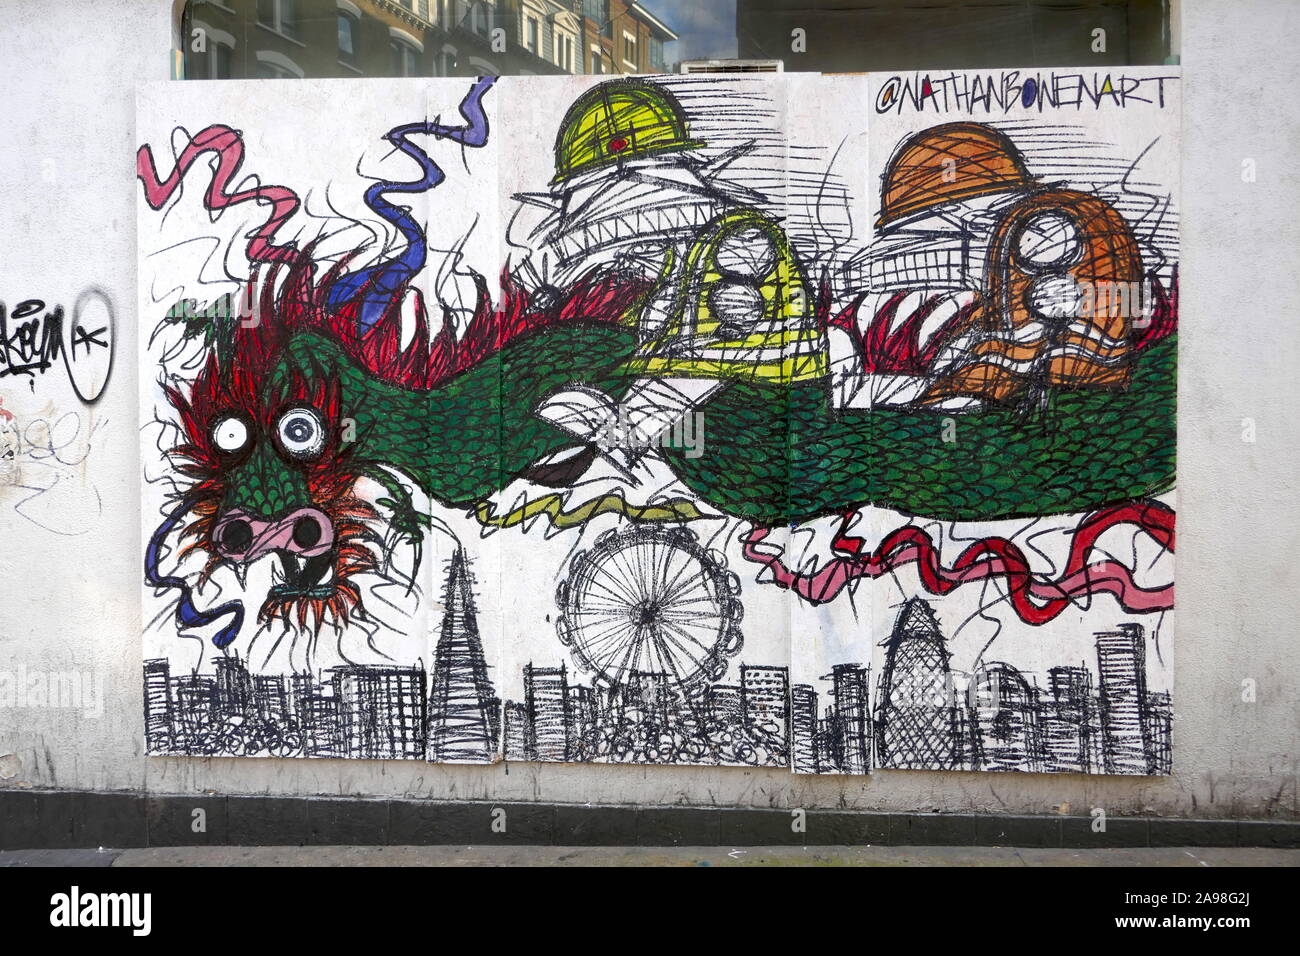 Urban Art von Nathan Bowen in Verkohlung Cross Road Feiern zum chinesischen Neujahrsfest. Stockfoto